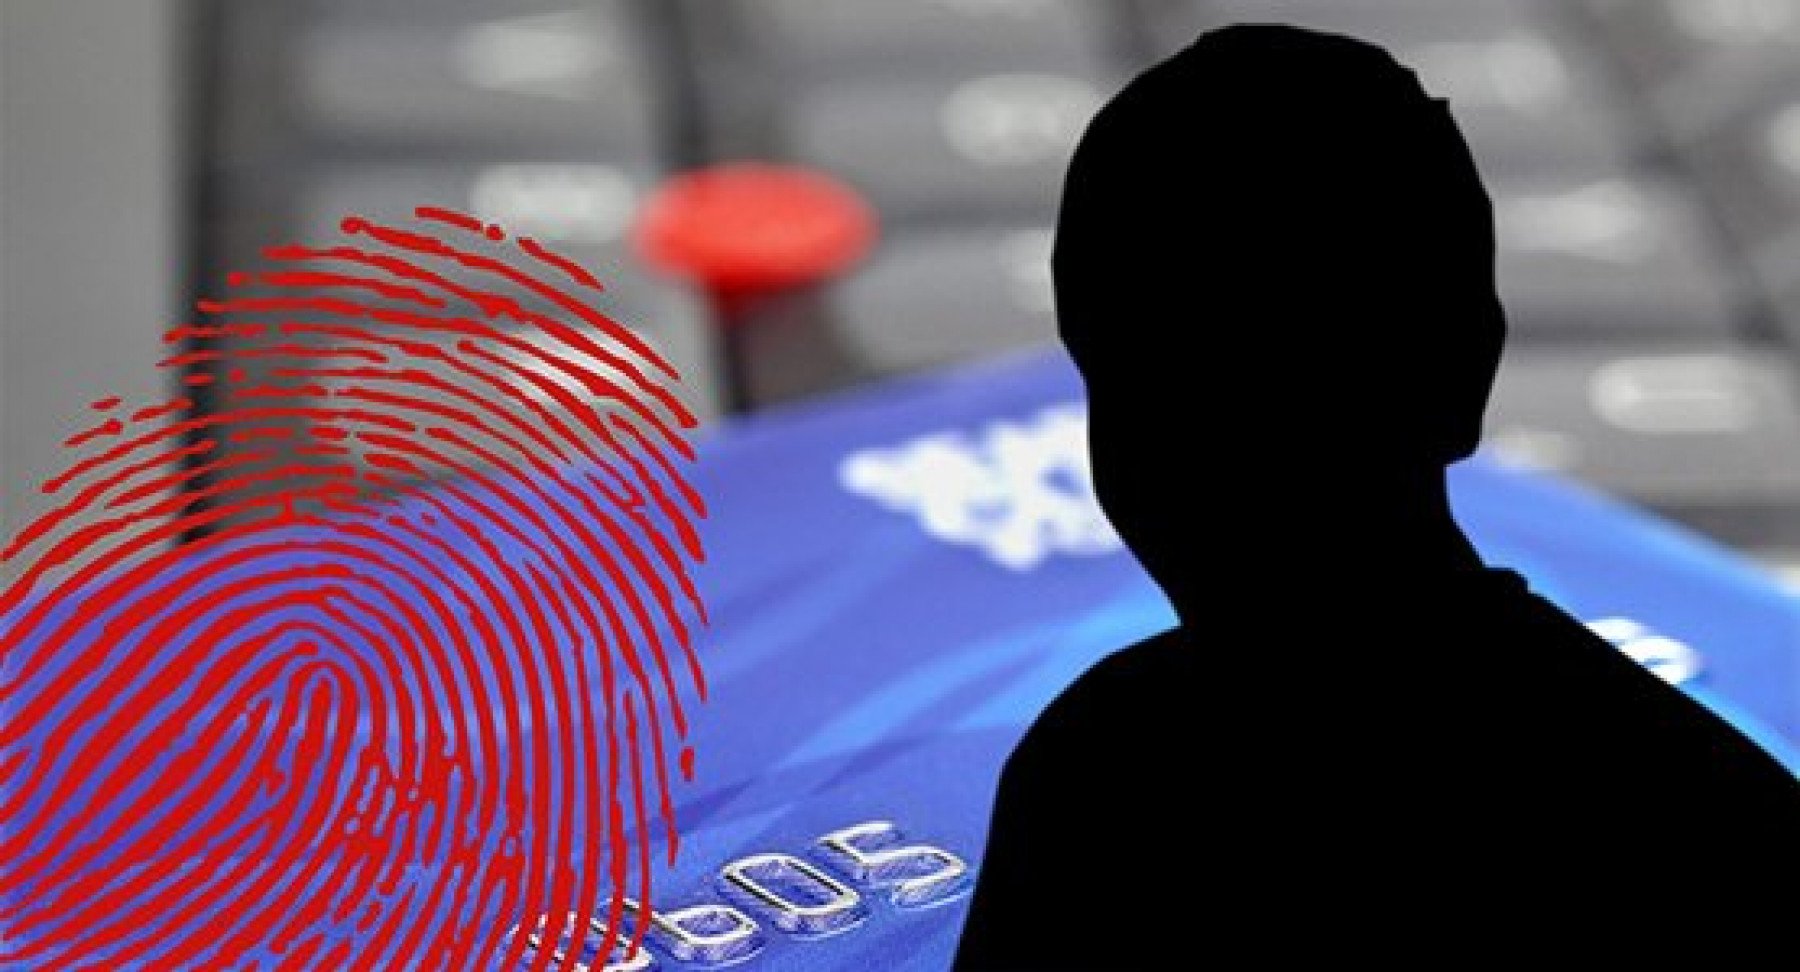 Ett kreditkort i bakgrunden av bilden med ett fingeravtryck och en person i svart siluett